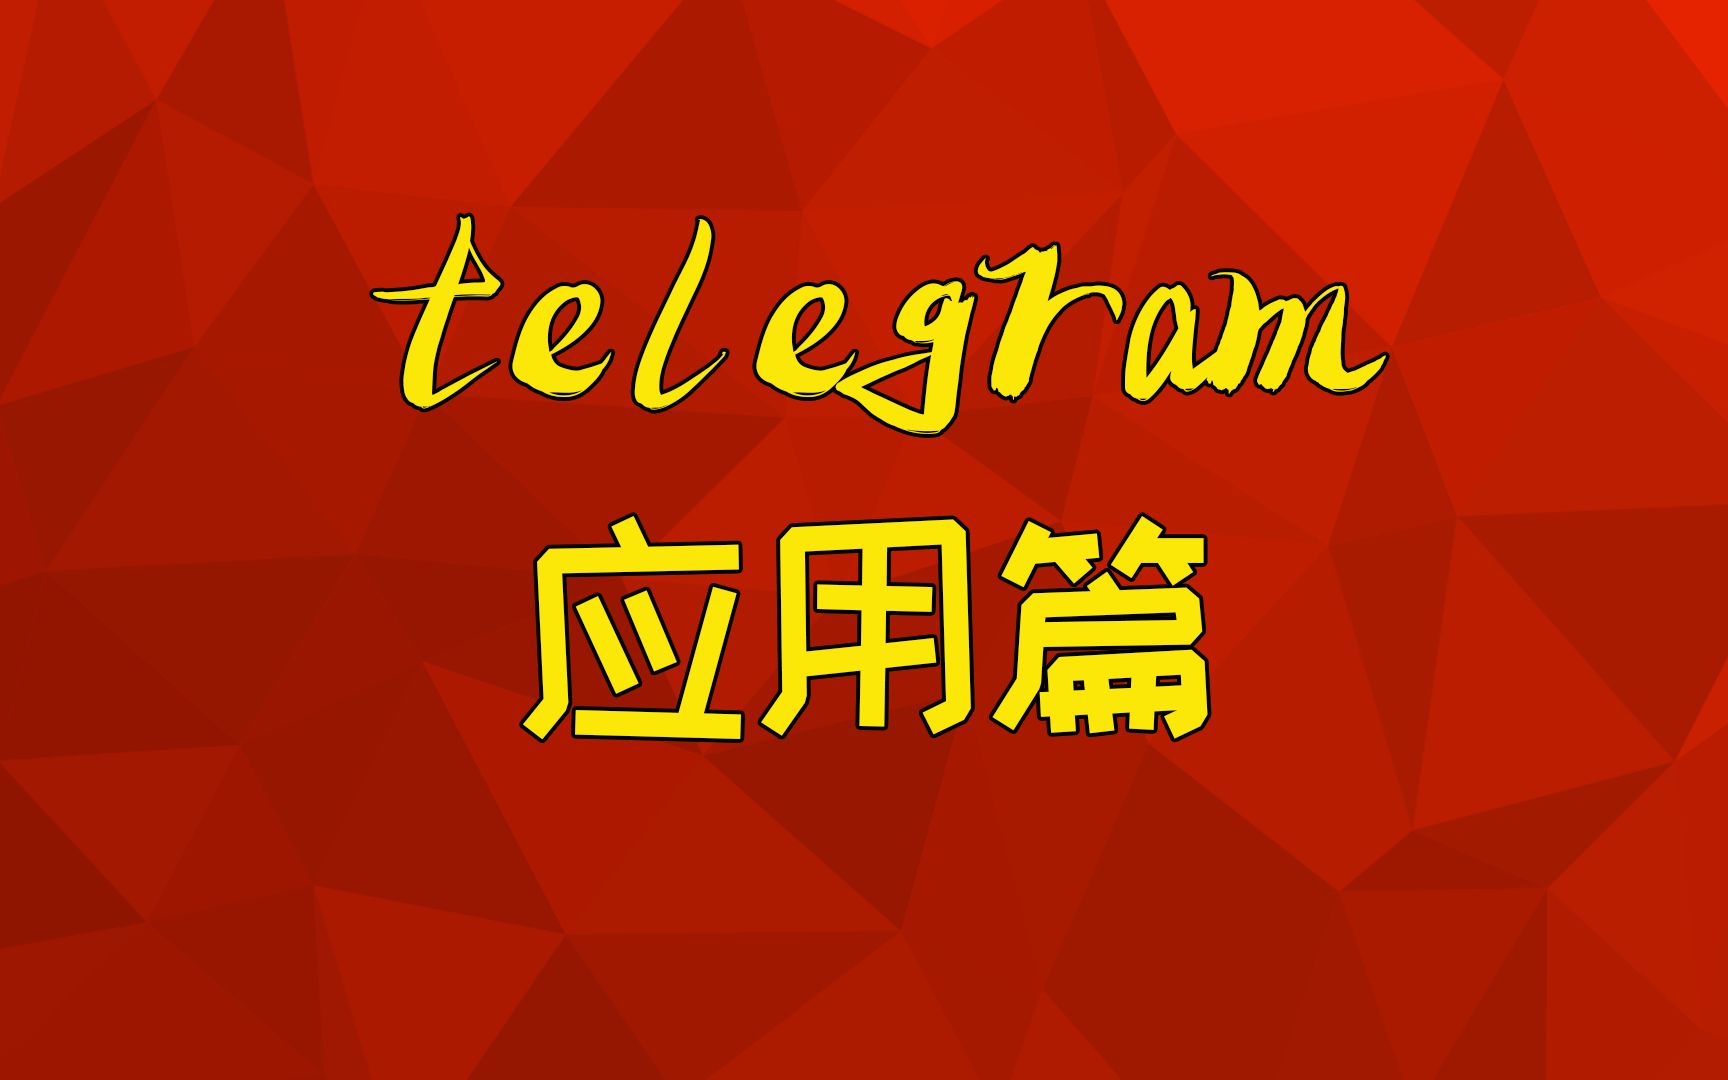 telegram 双向_telegram双向联系_telegram 双向